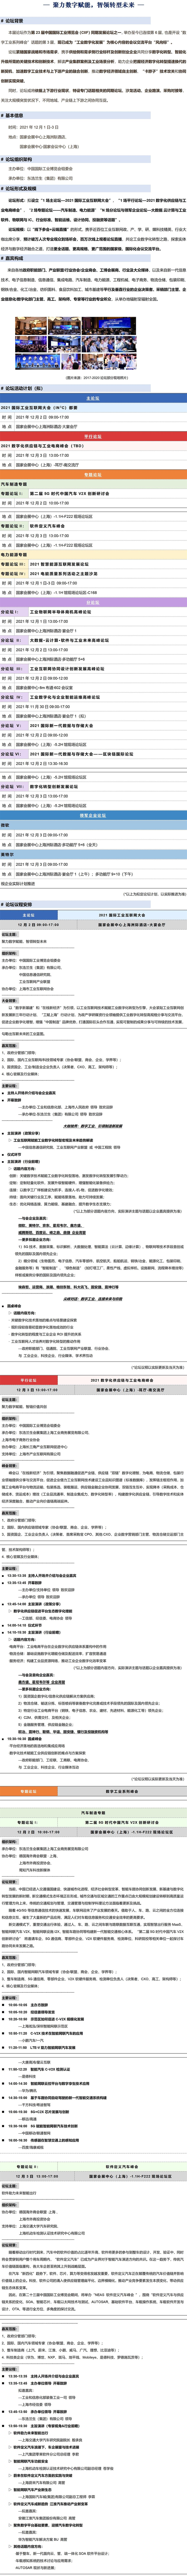 【2021中国工博会】同期重点大会-细化议程（上海）-10_01.jpg